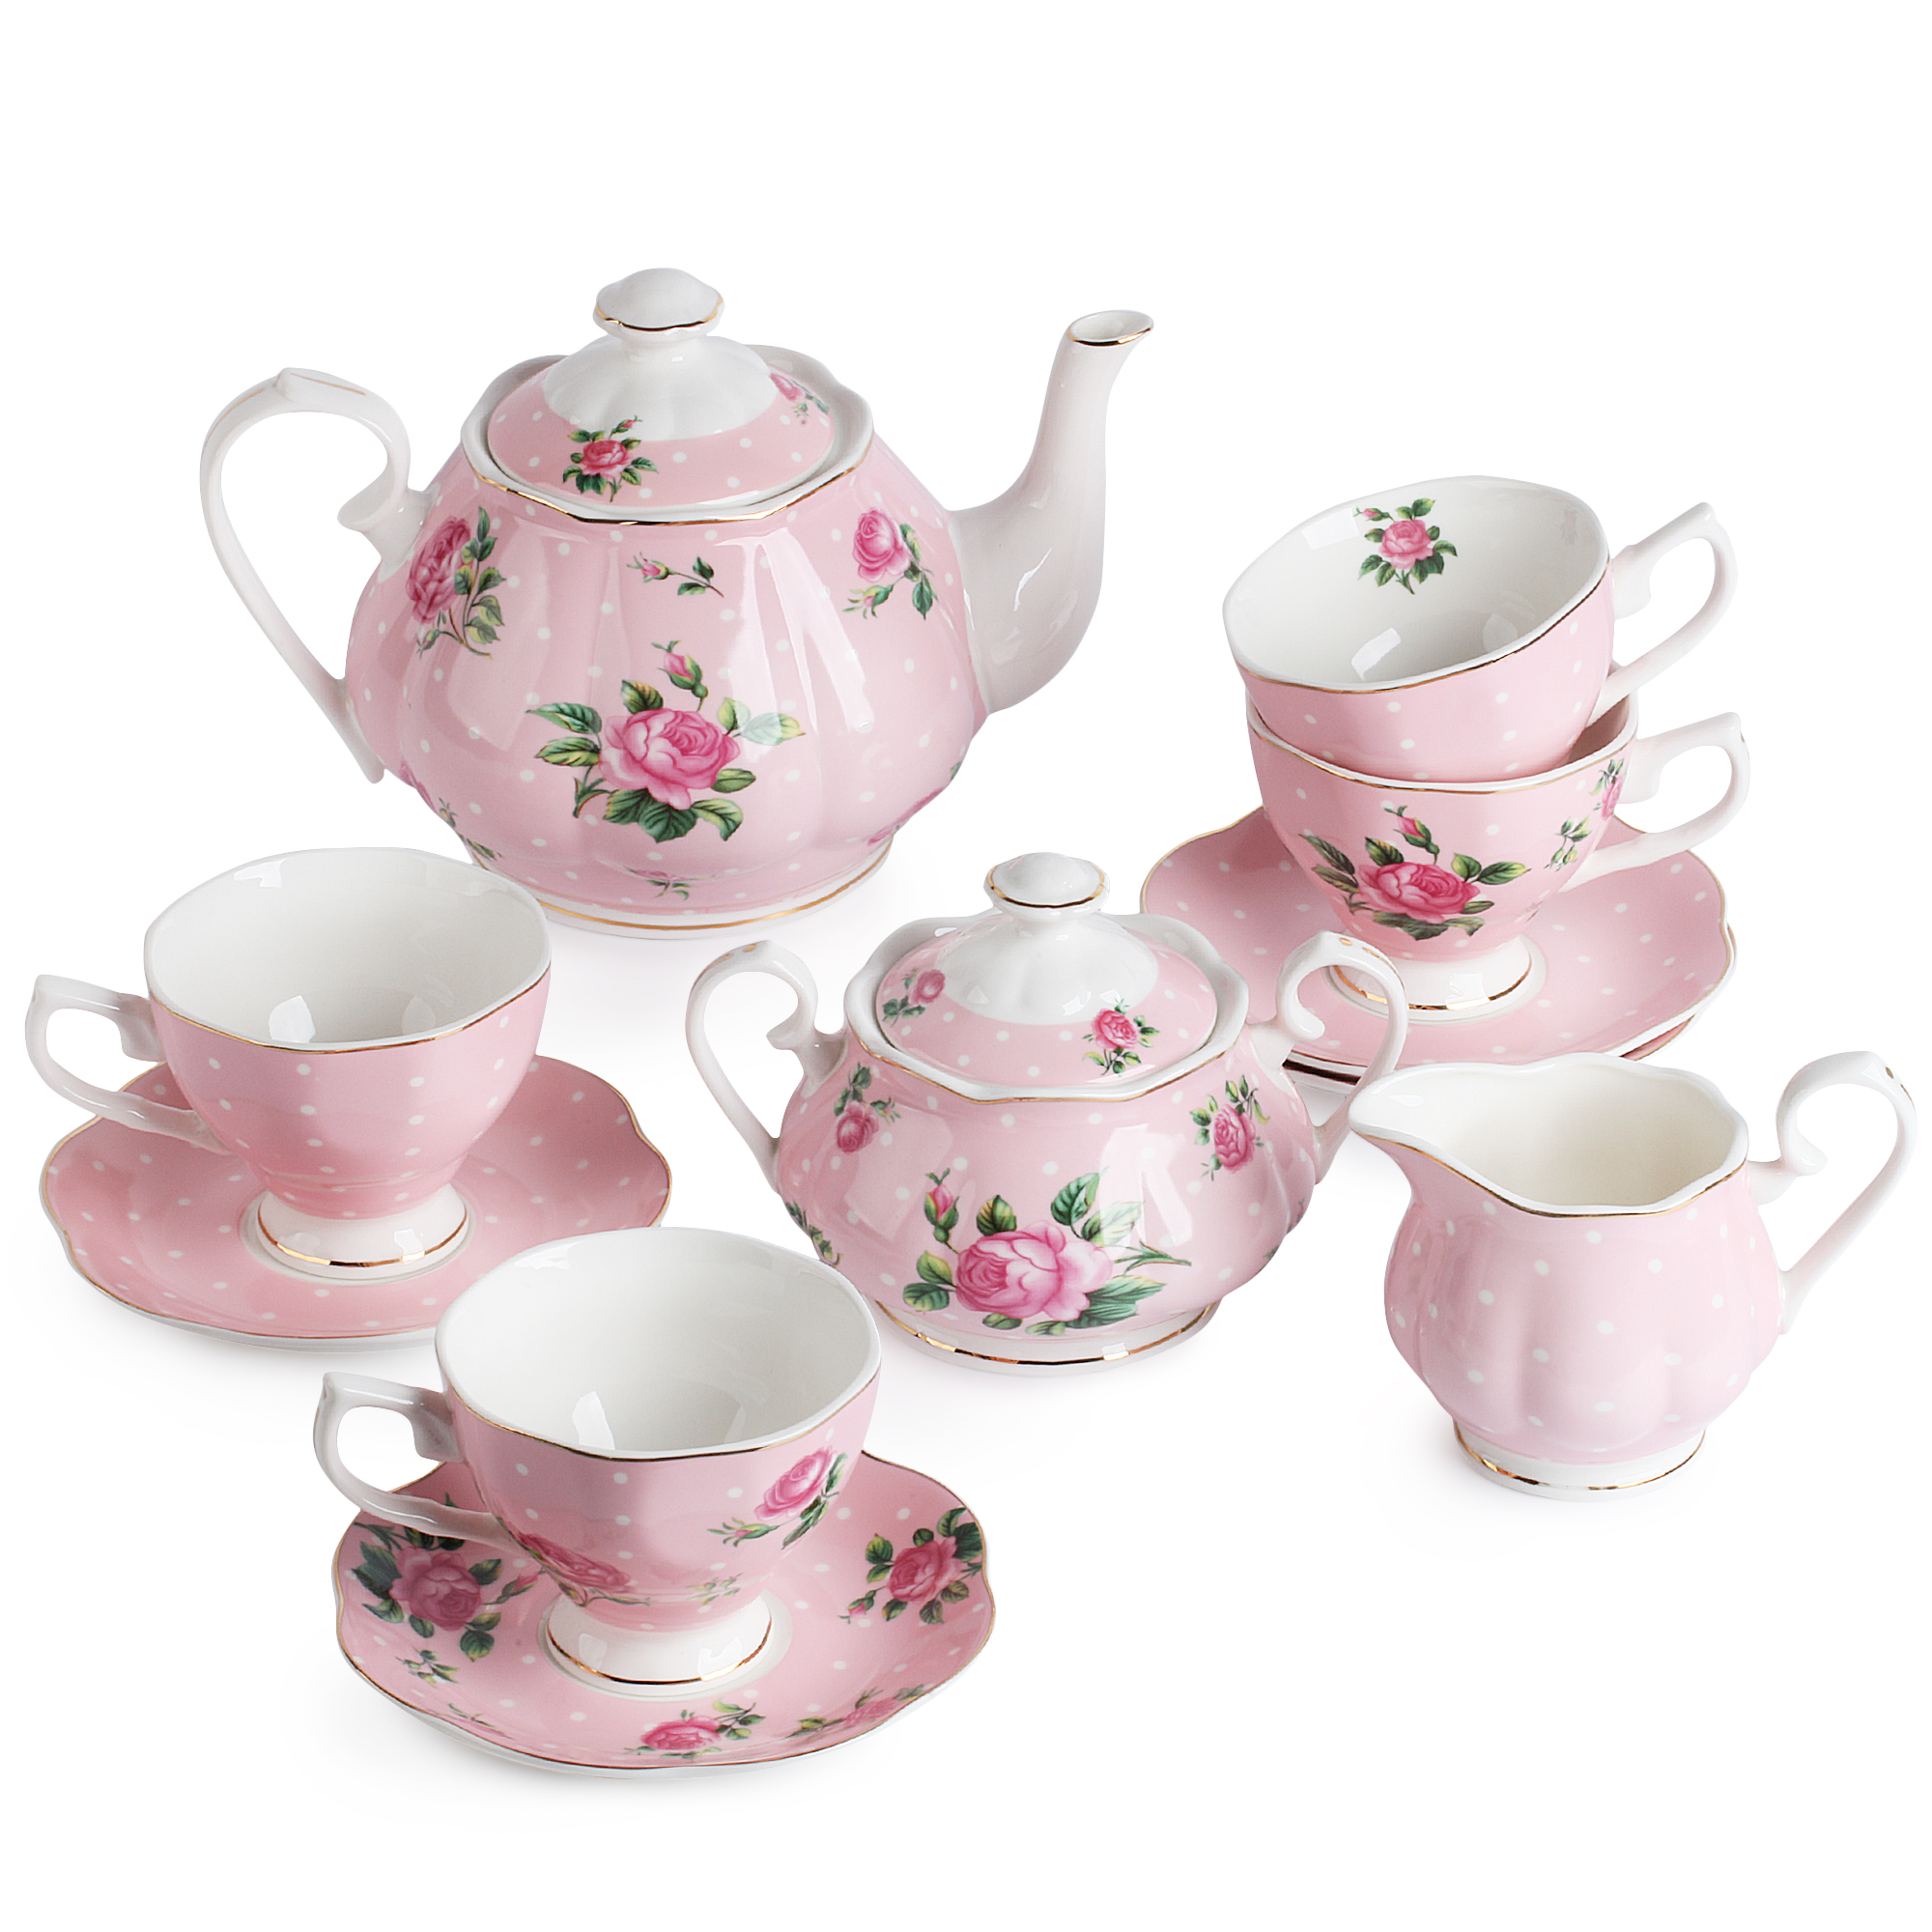 Sale Pink Tea Pot In Stock 6305